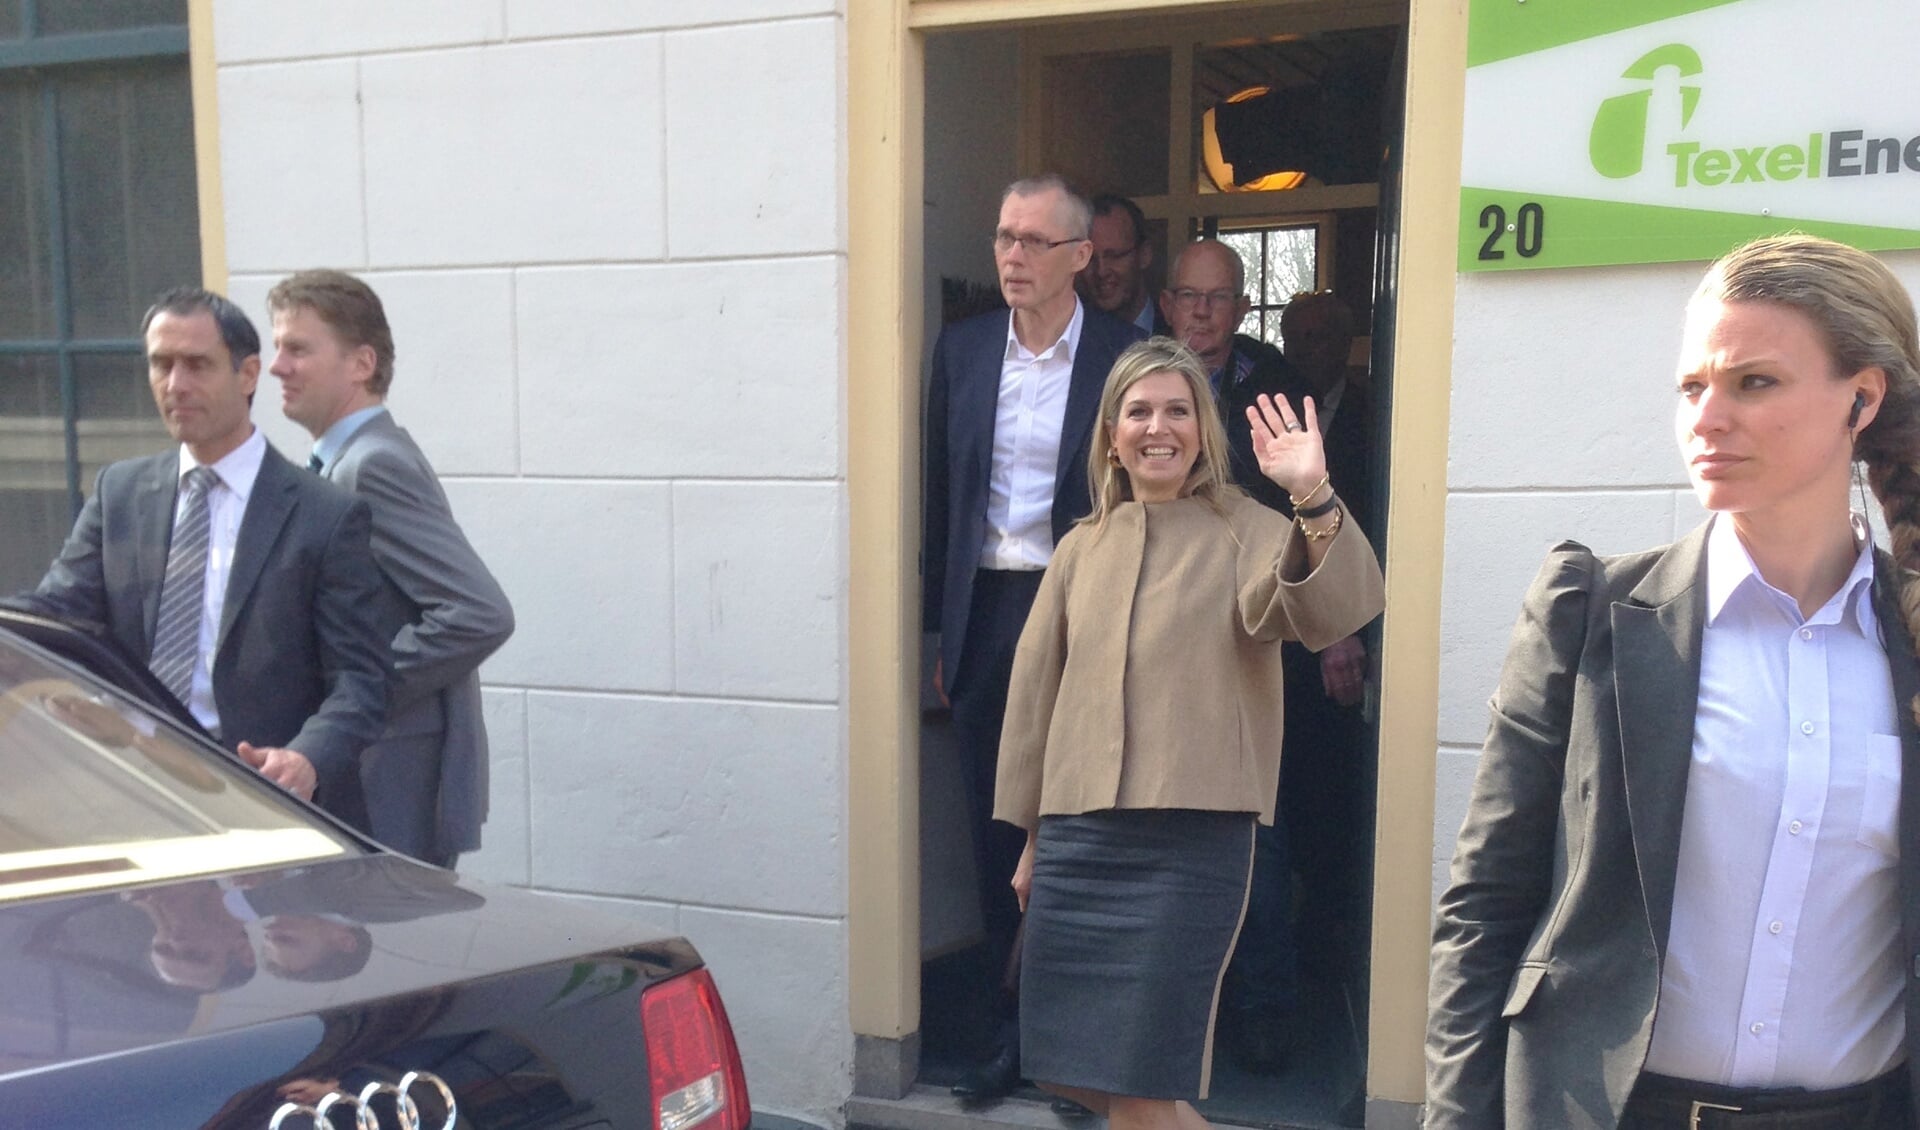 Koningin Máxima verlaat het kantoor van TexelEnergie. (Foto Jasmijn Schilling)